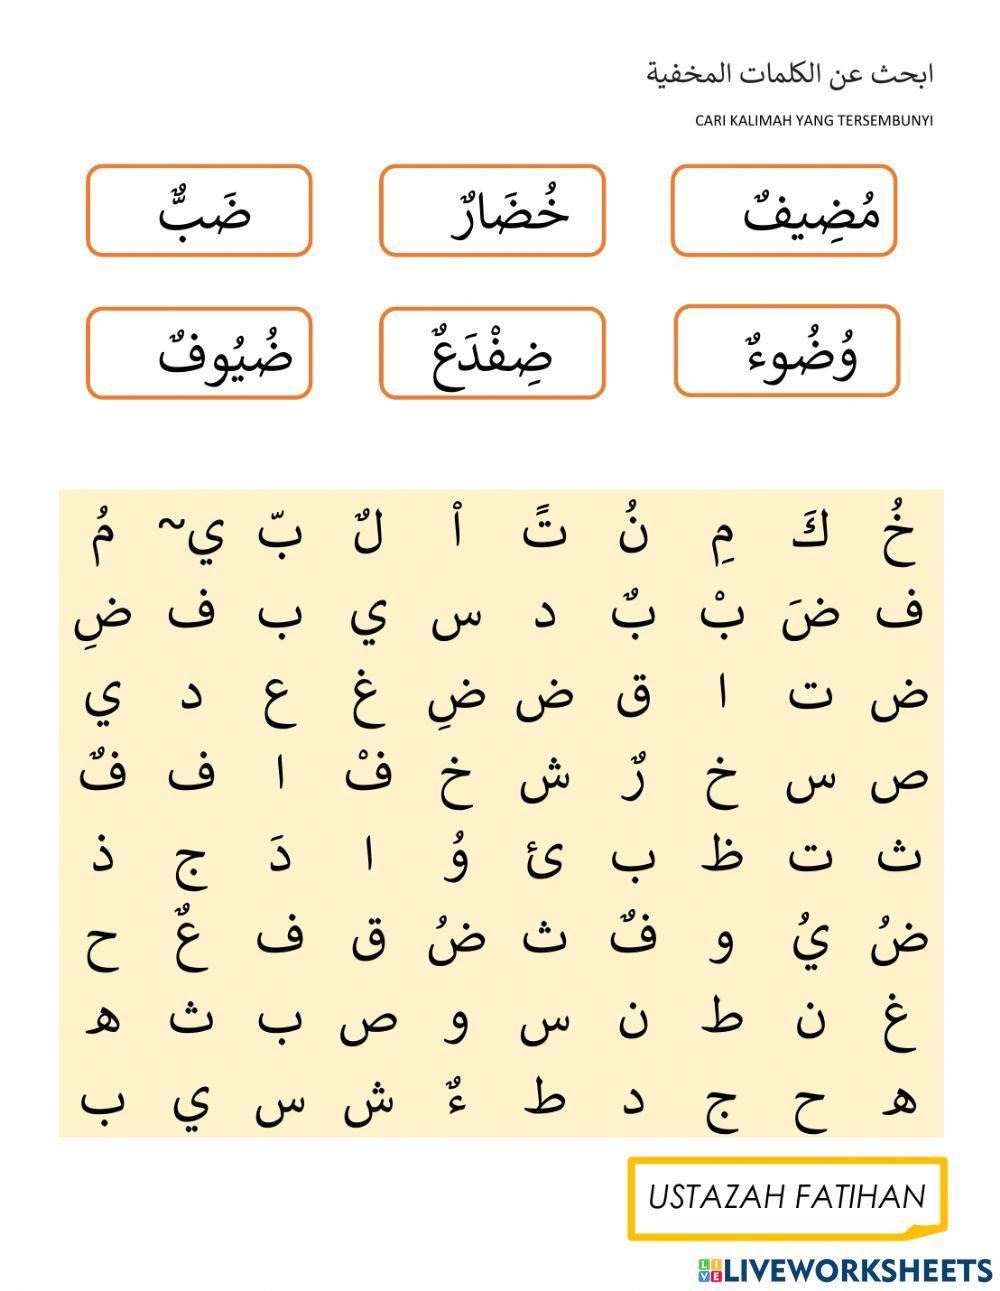 Arabic wordsearch